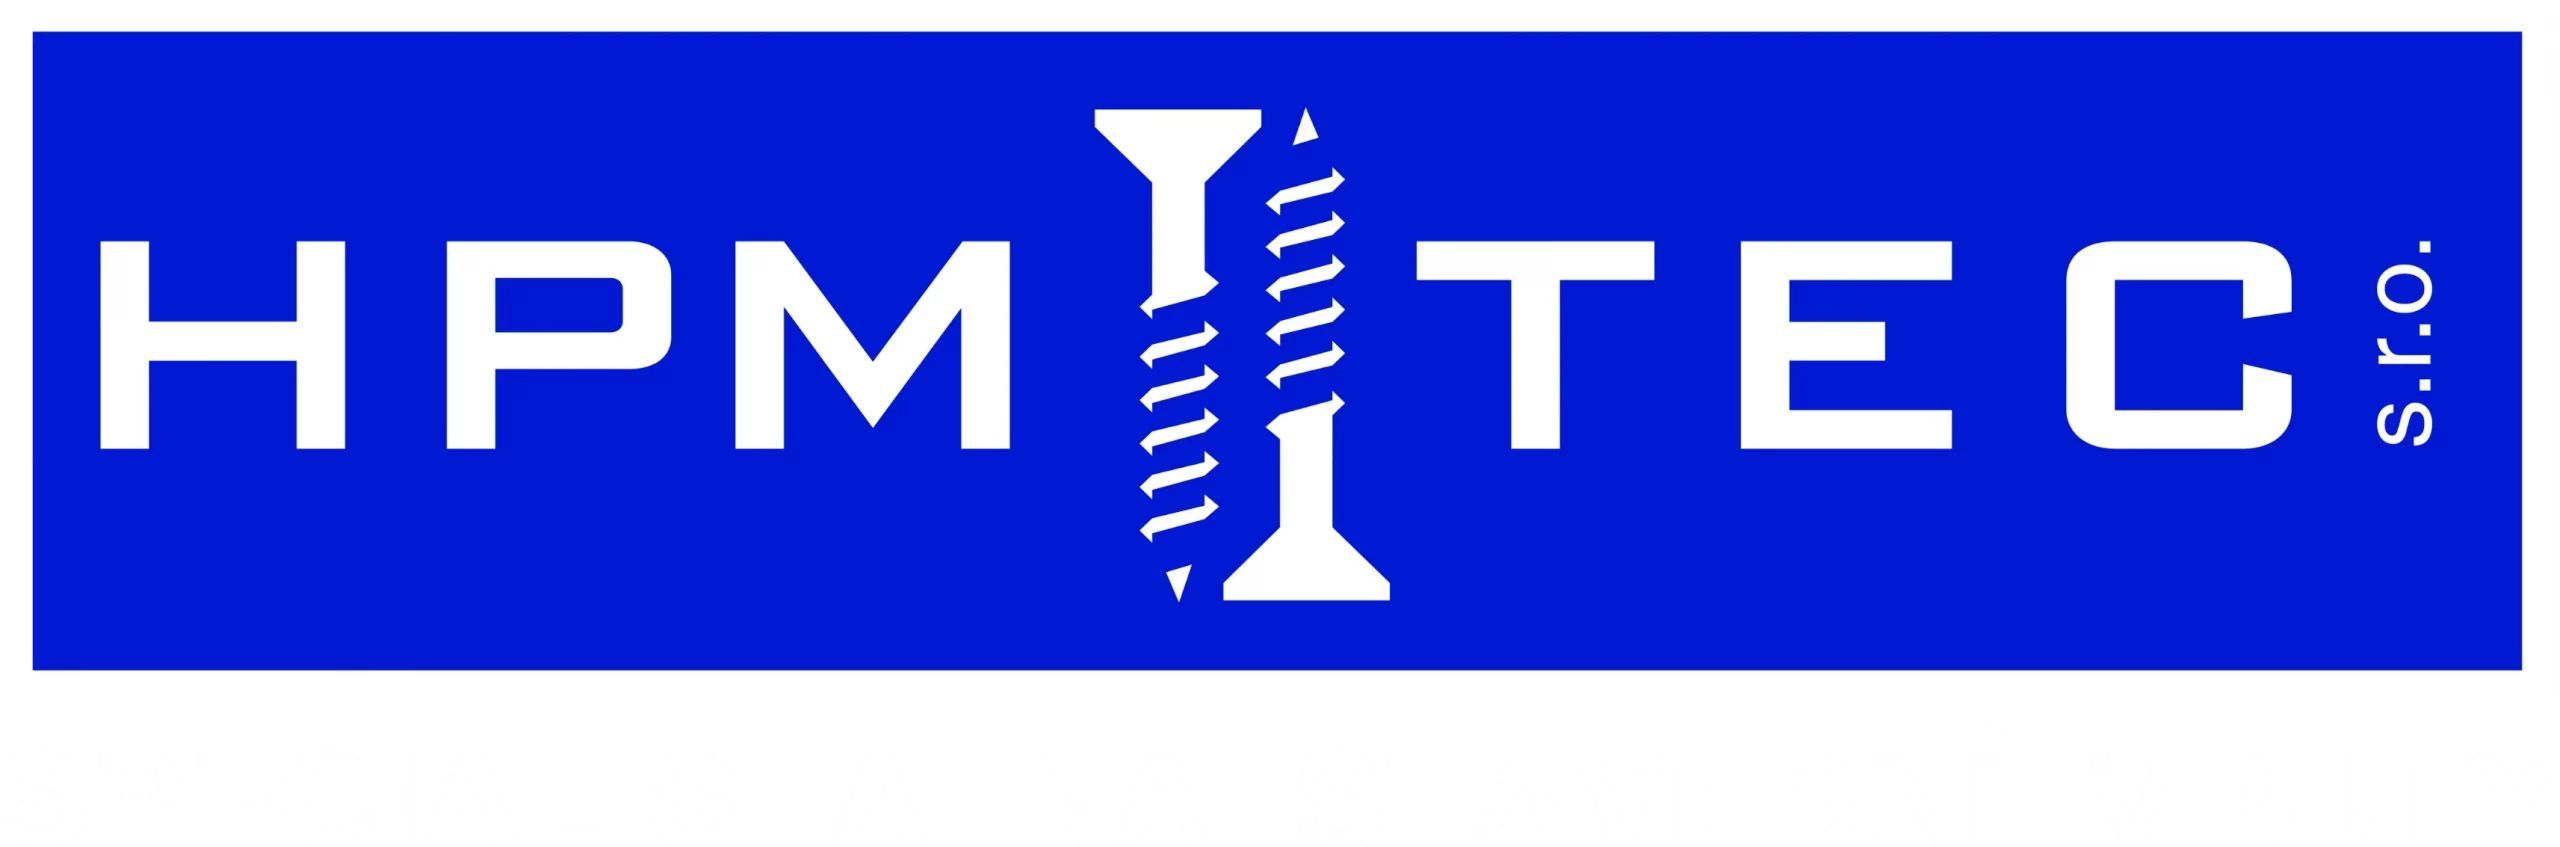 logo hpmtec